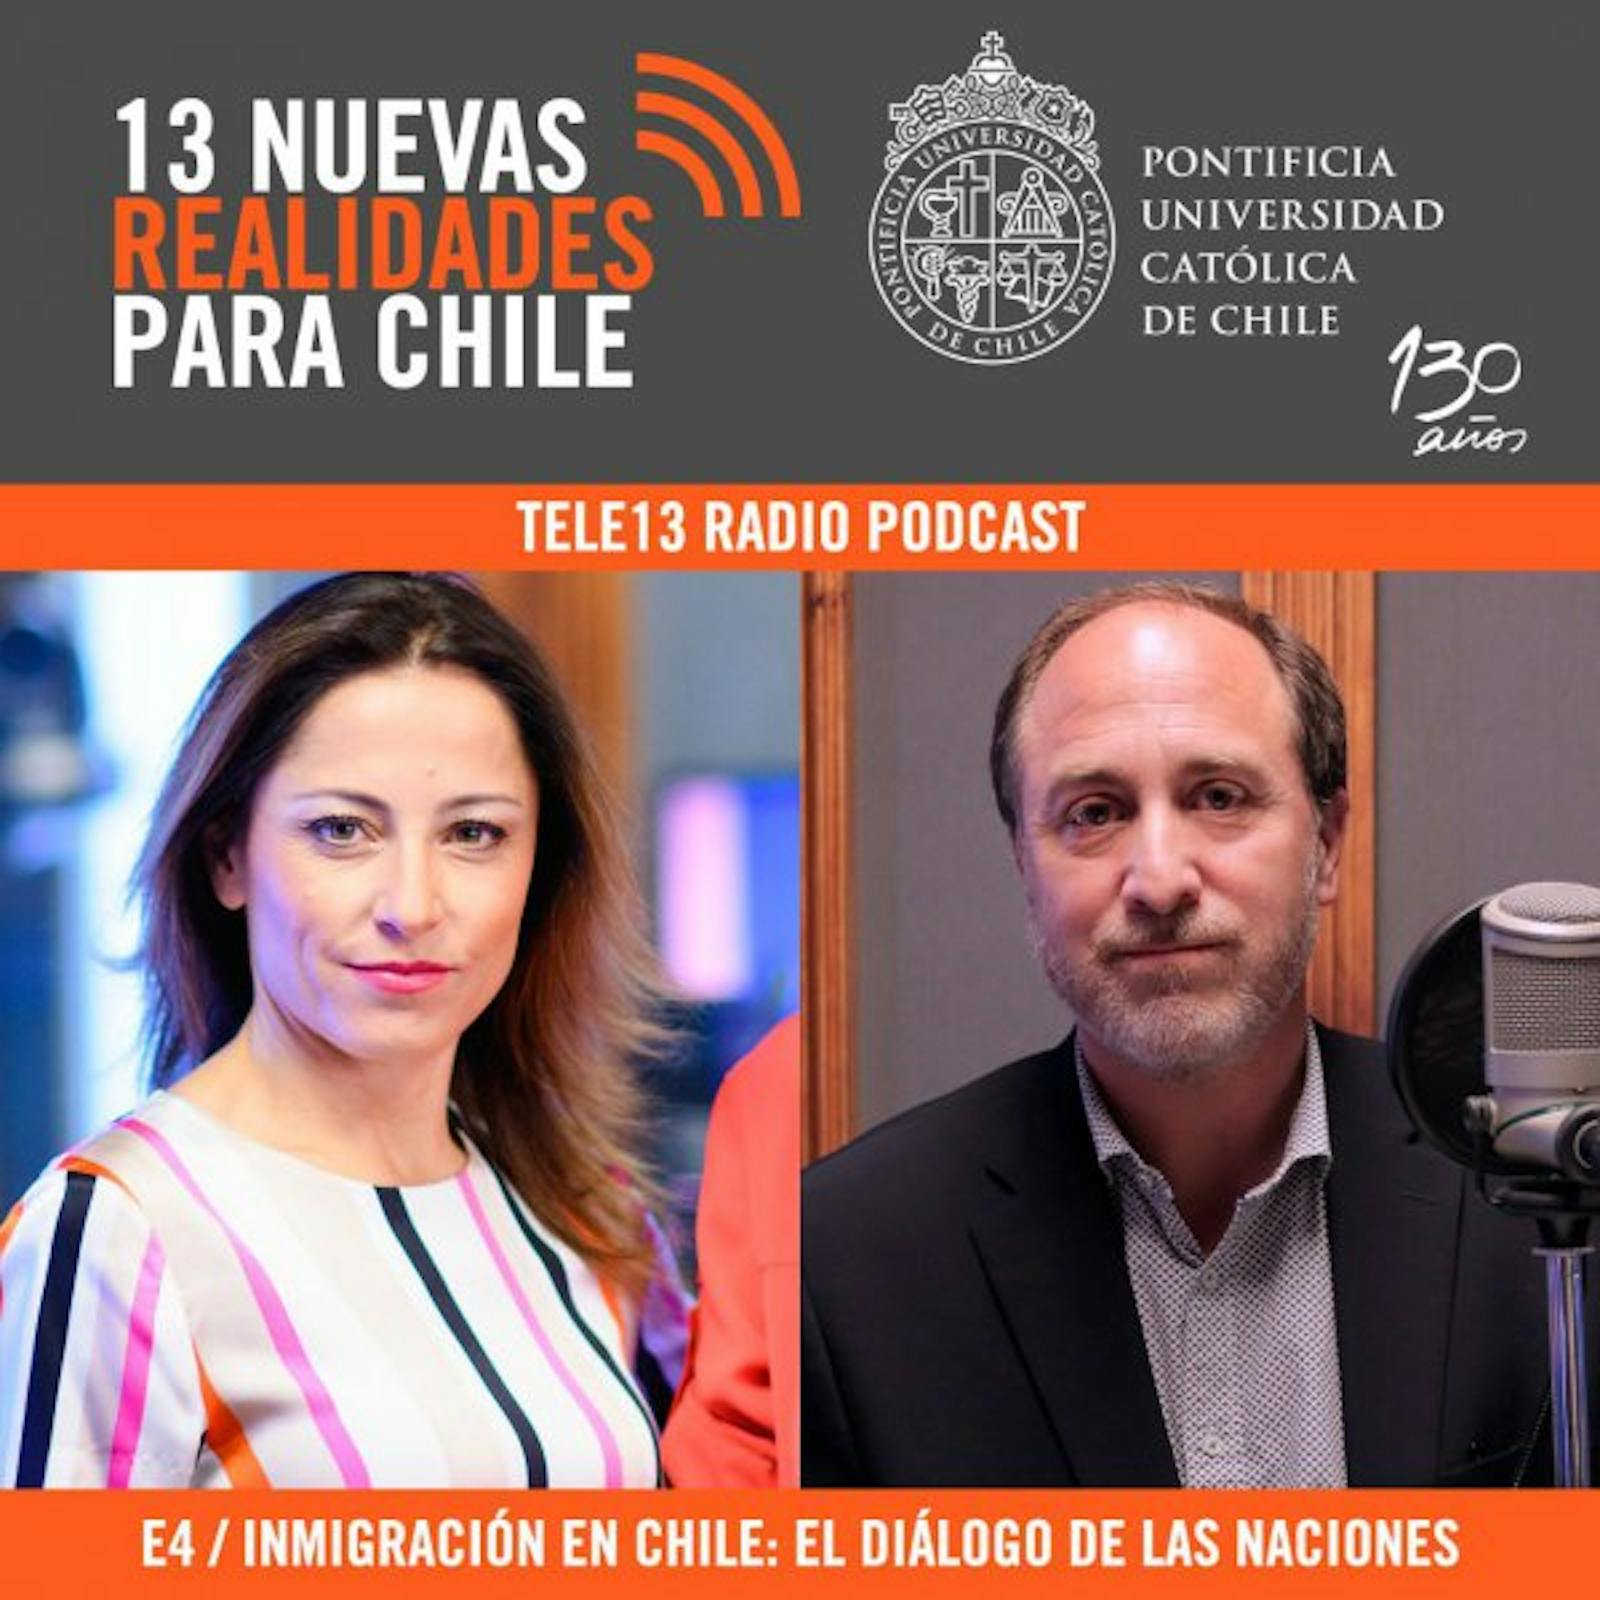 E4 "Inmigración en Chile: el diálogo de las naciones" con Roberto González